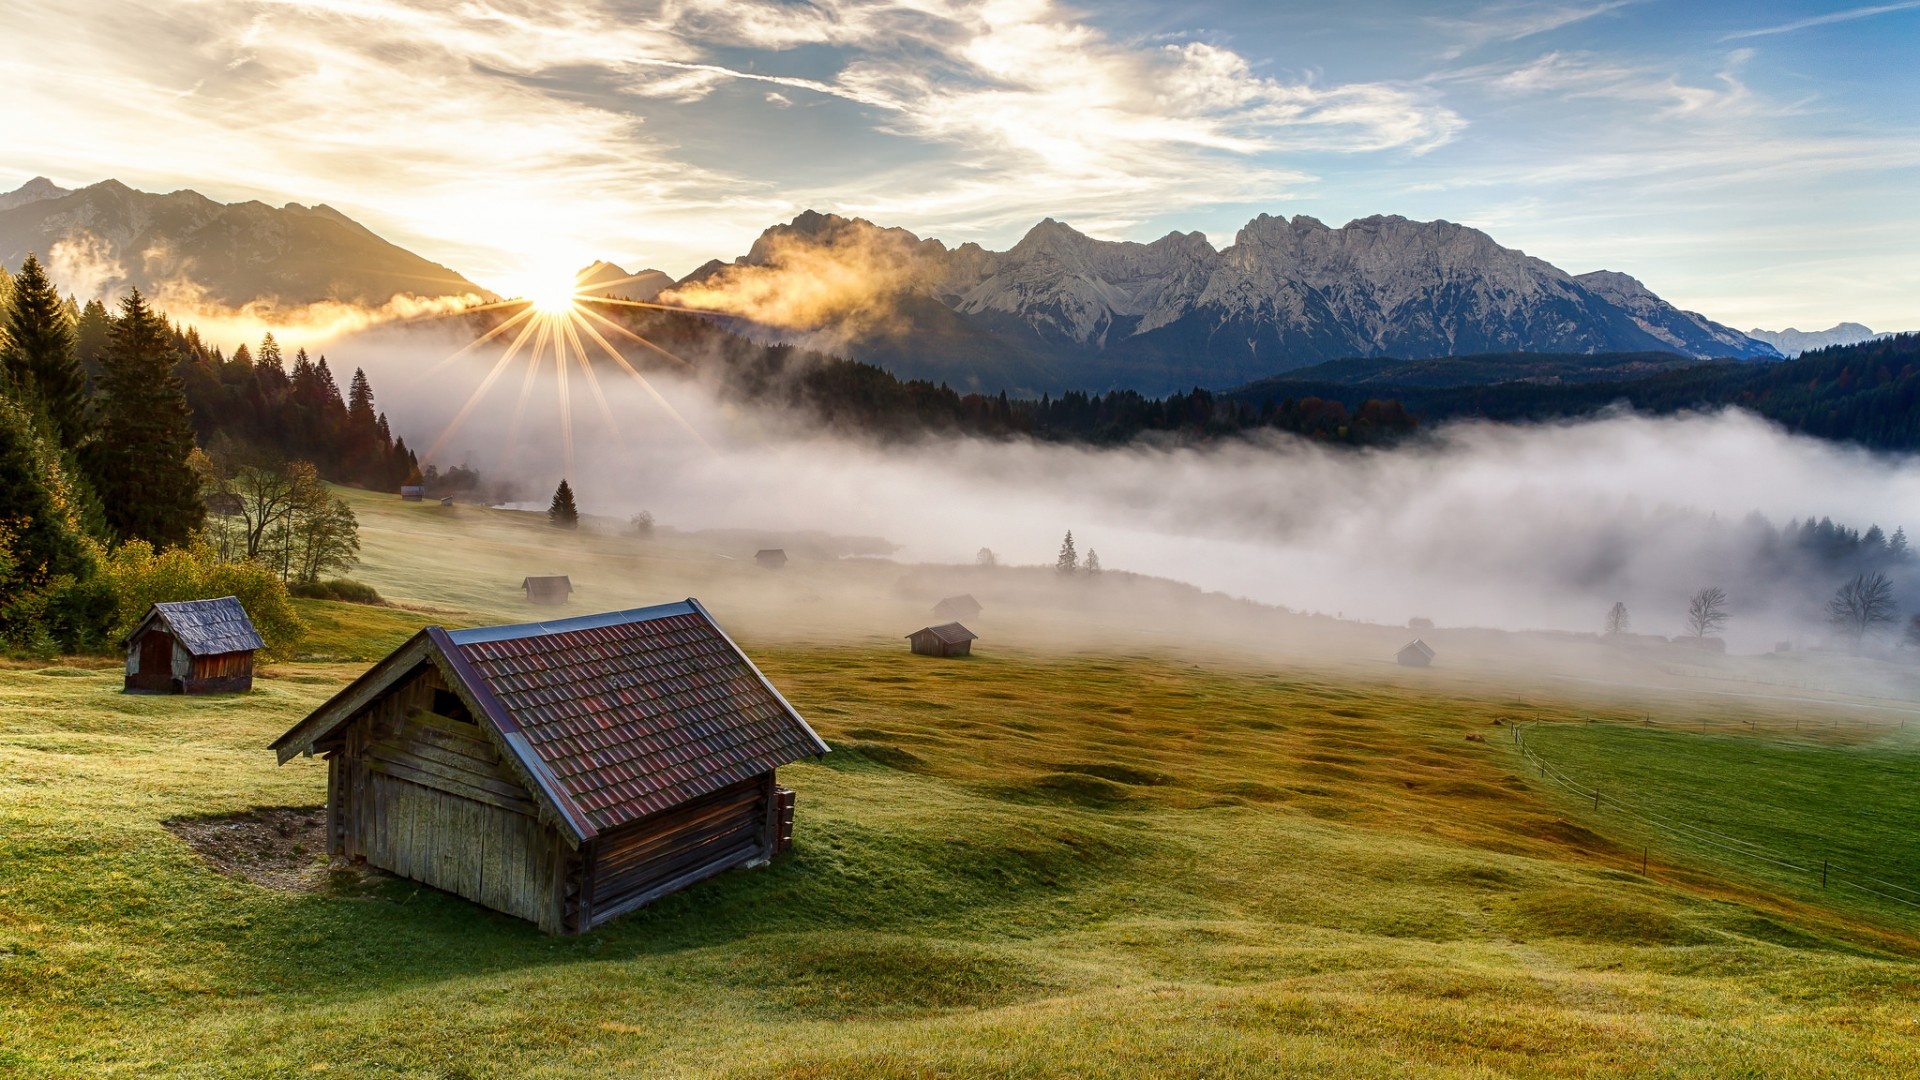 巴伐利亚 山 房子 草地 早上的风景壁纸壁纸